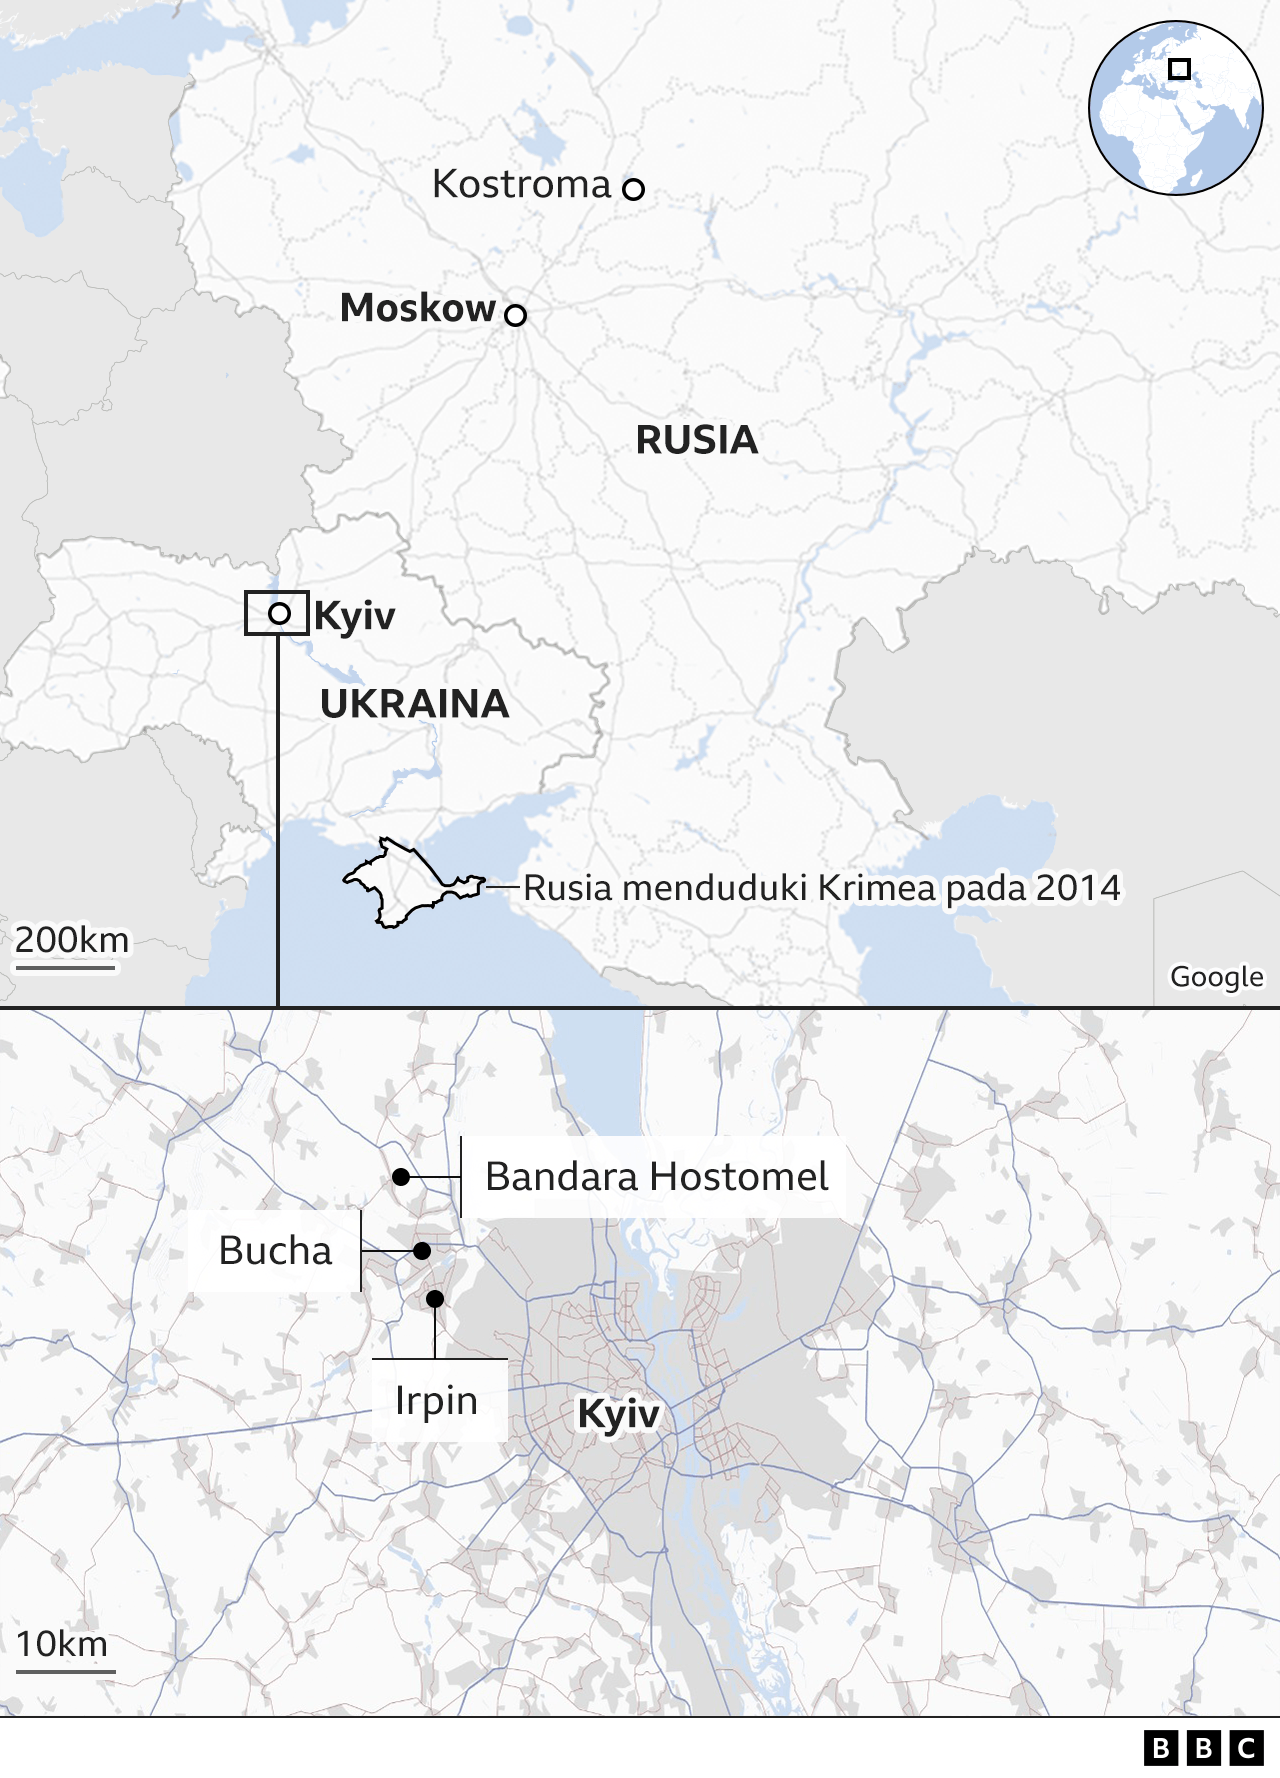 Sebuah peta menunjukkan wilayah Kostroma di Rusia, tempat resimen 331 bermarkas, dan Irpin, Bucha dan Hostomel, tempat mereka bertempur di Ukraina.